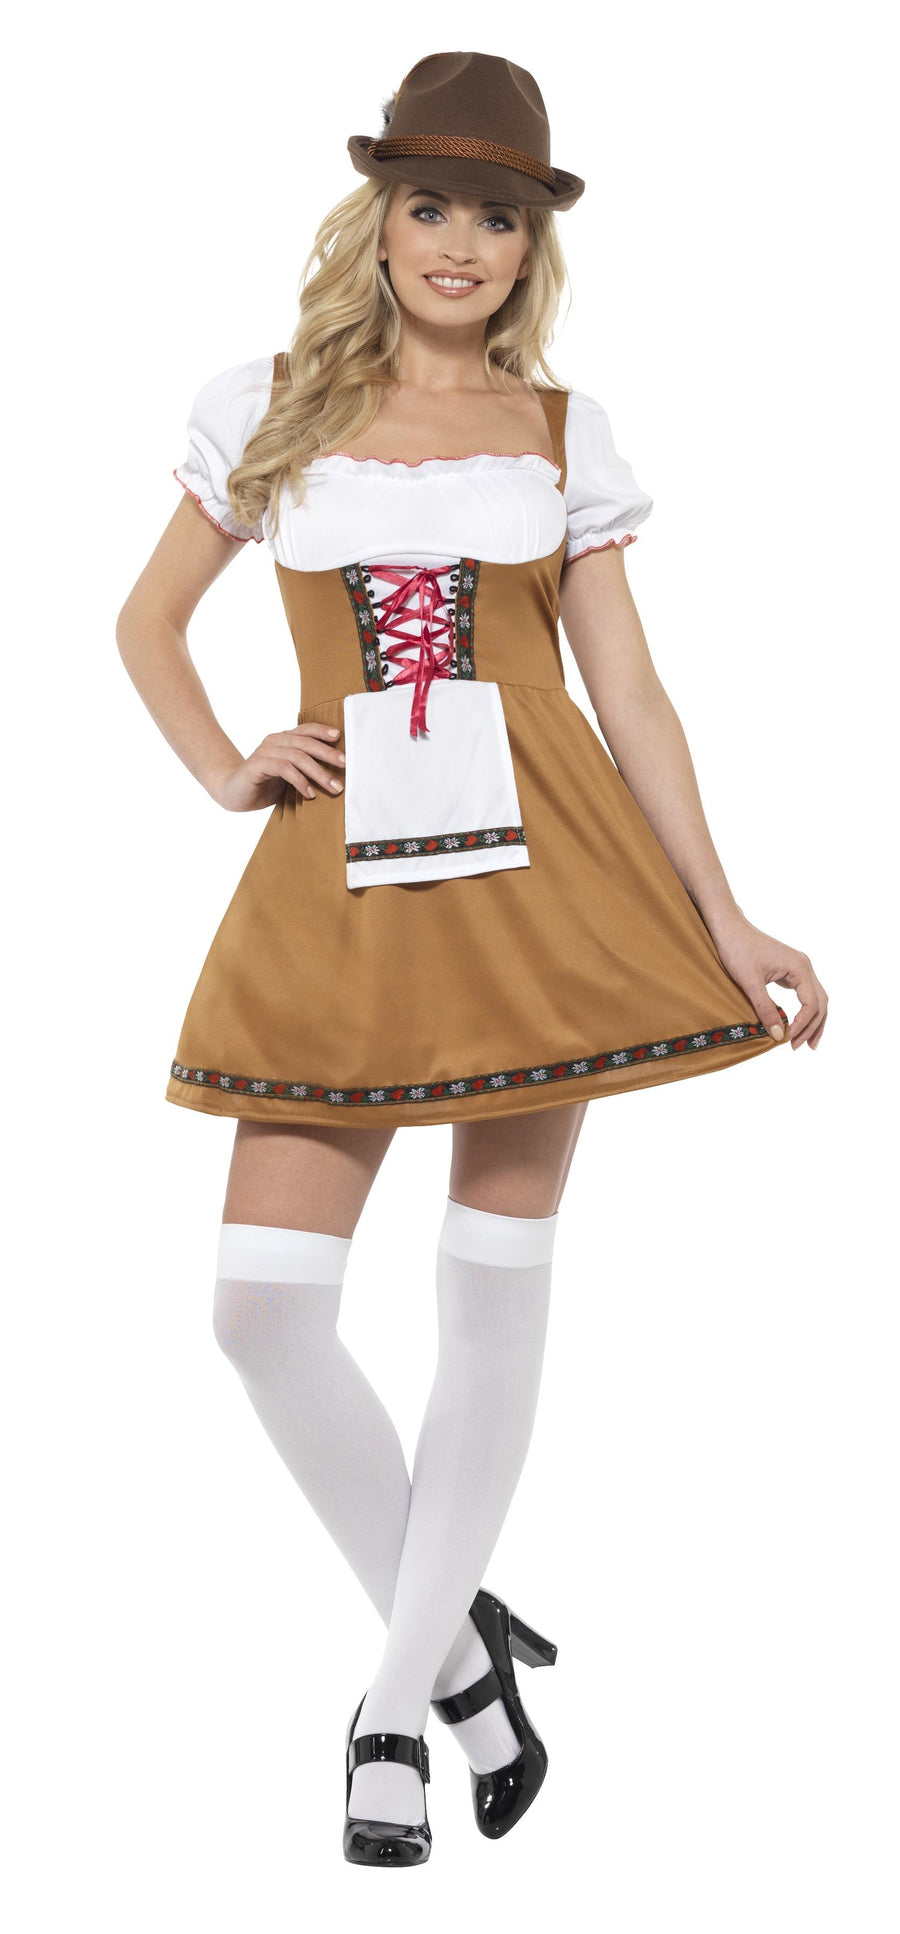 Bavarian Beer Maid Costume, Brown